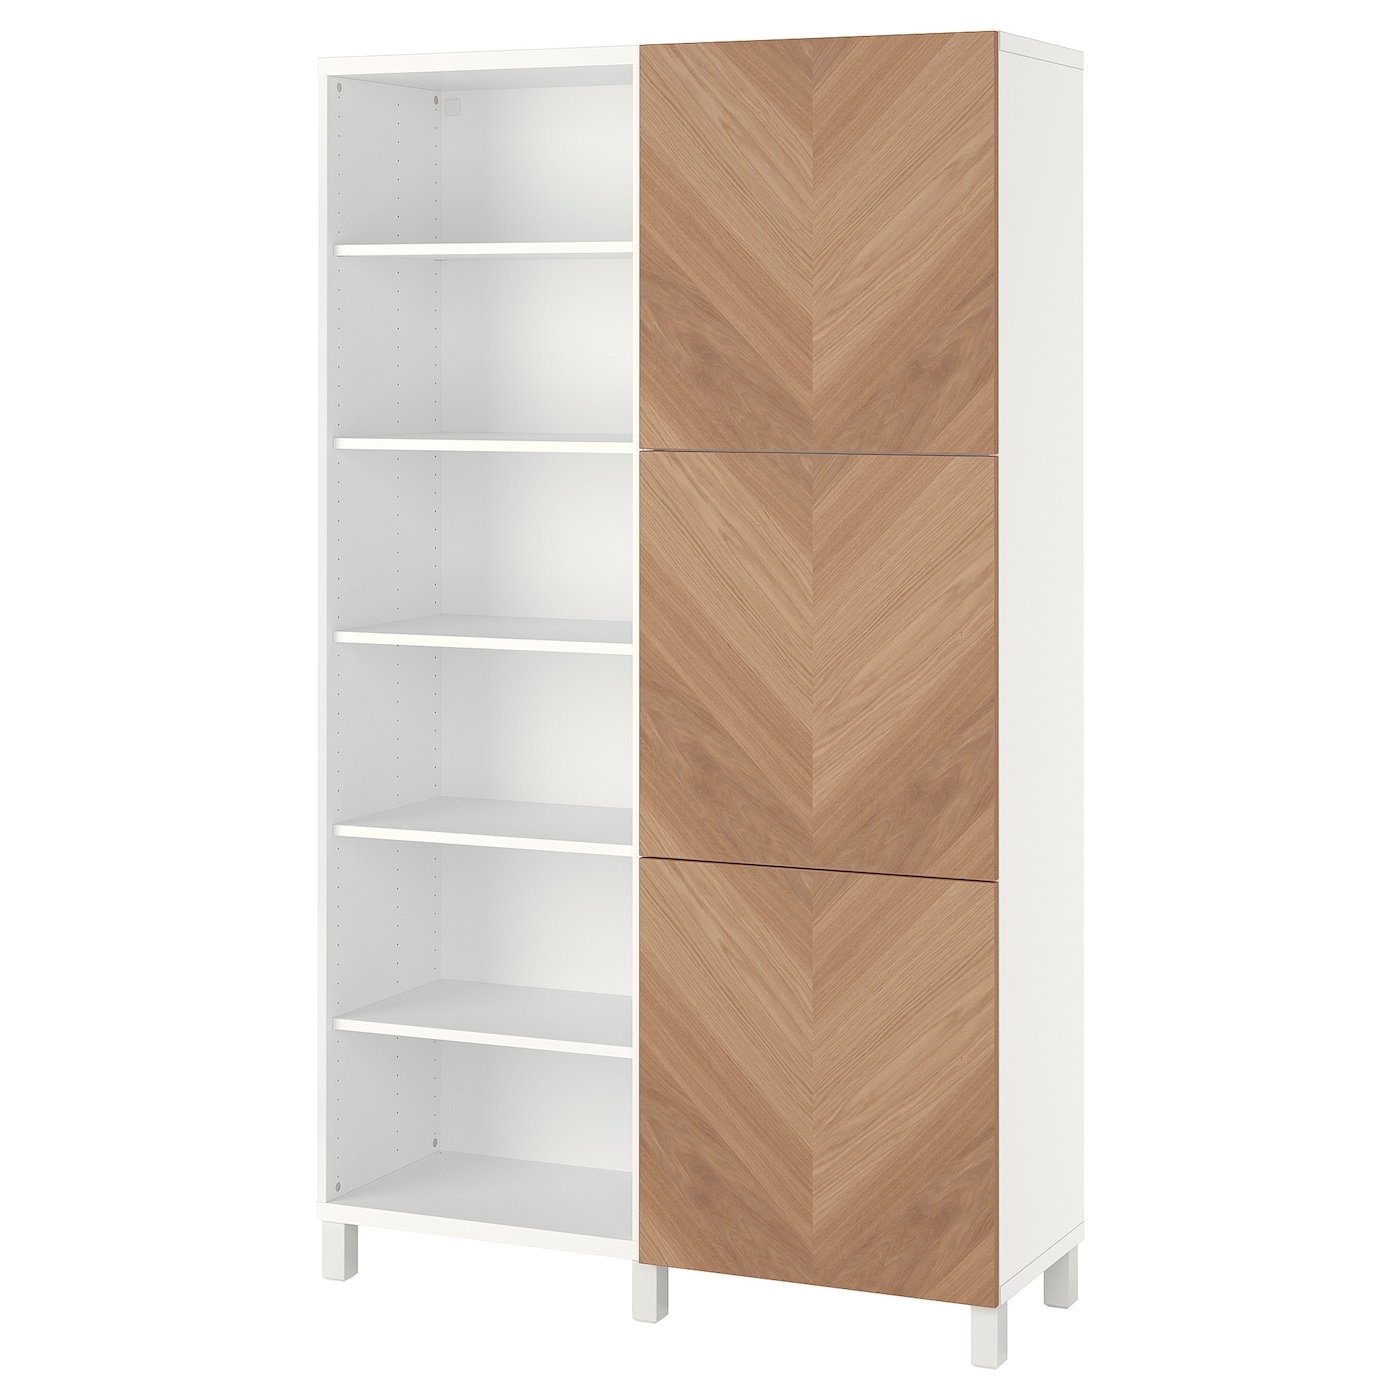 Книжный шкаф с дверцей - IKEA BESTÅ/BESTA, 120x42x202 см, белый, Беста/Бесто ИКЕА